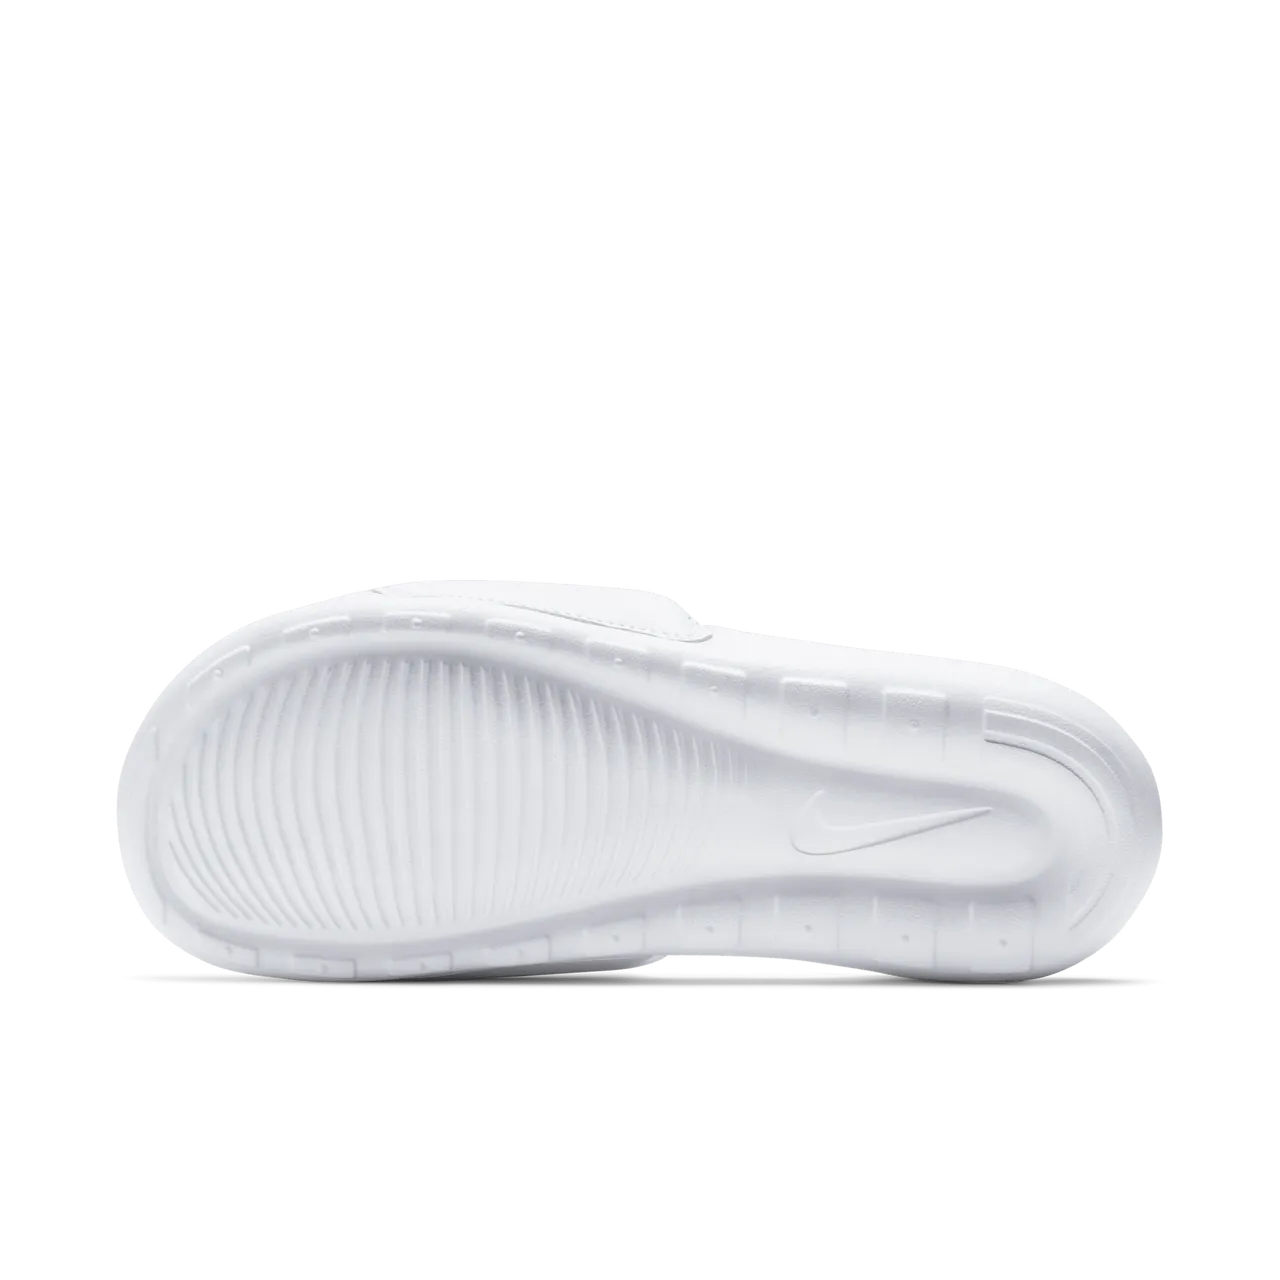 Nike Victori One Women's Slides - White